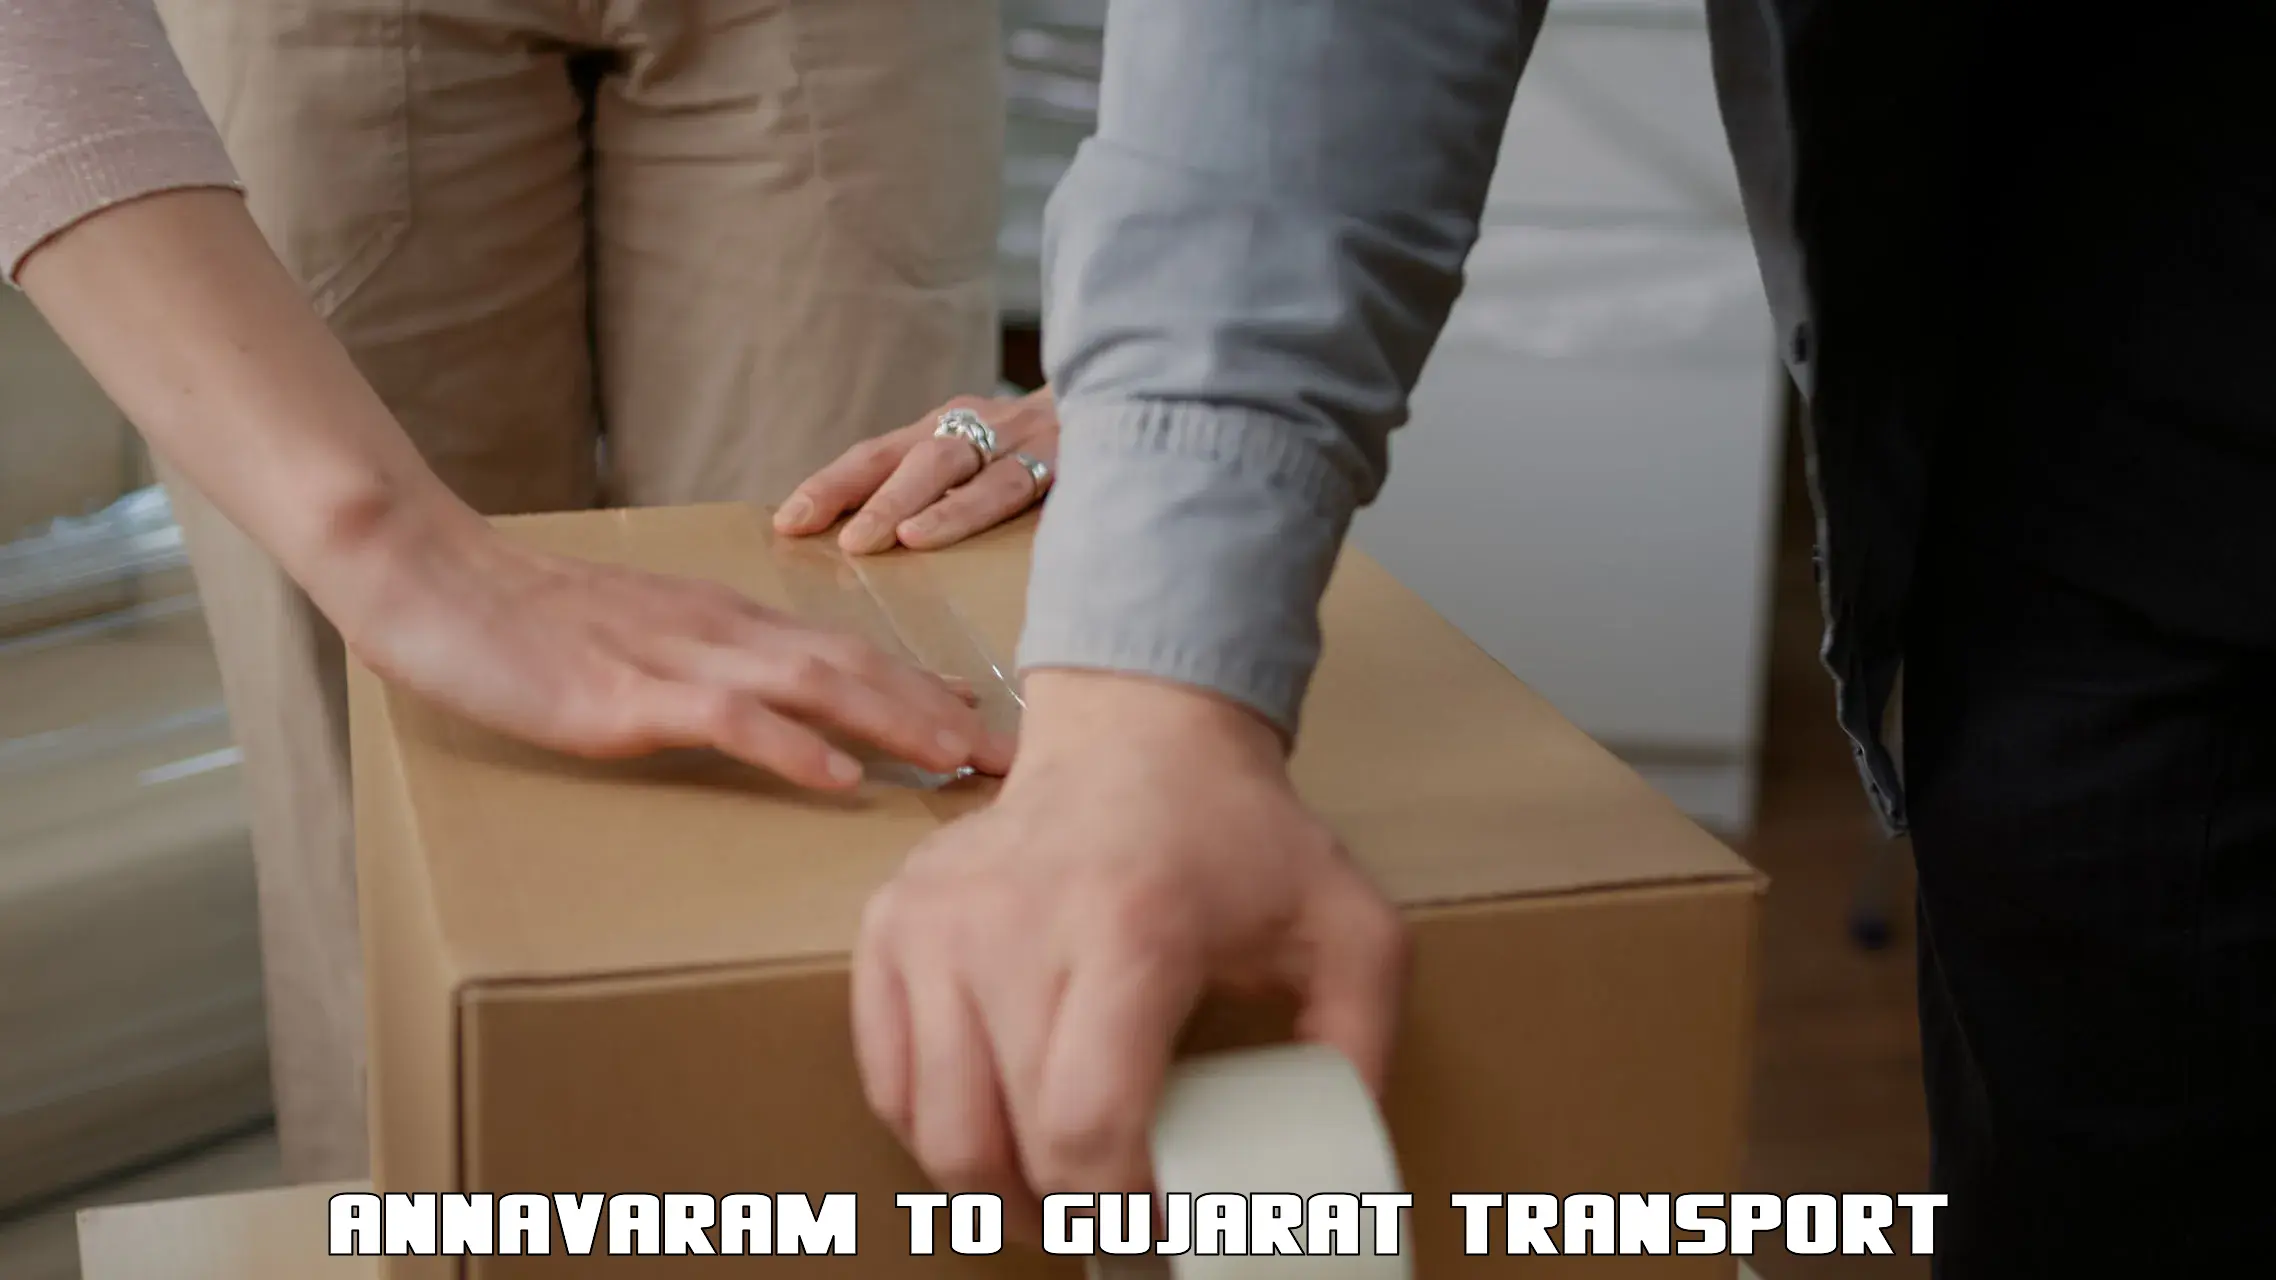 Lorry transport service Annavaram to Rapar